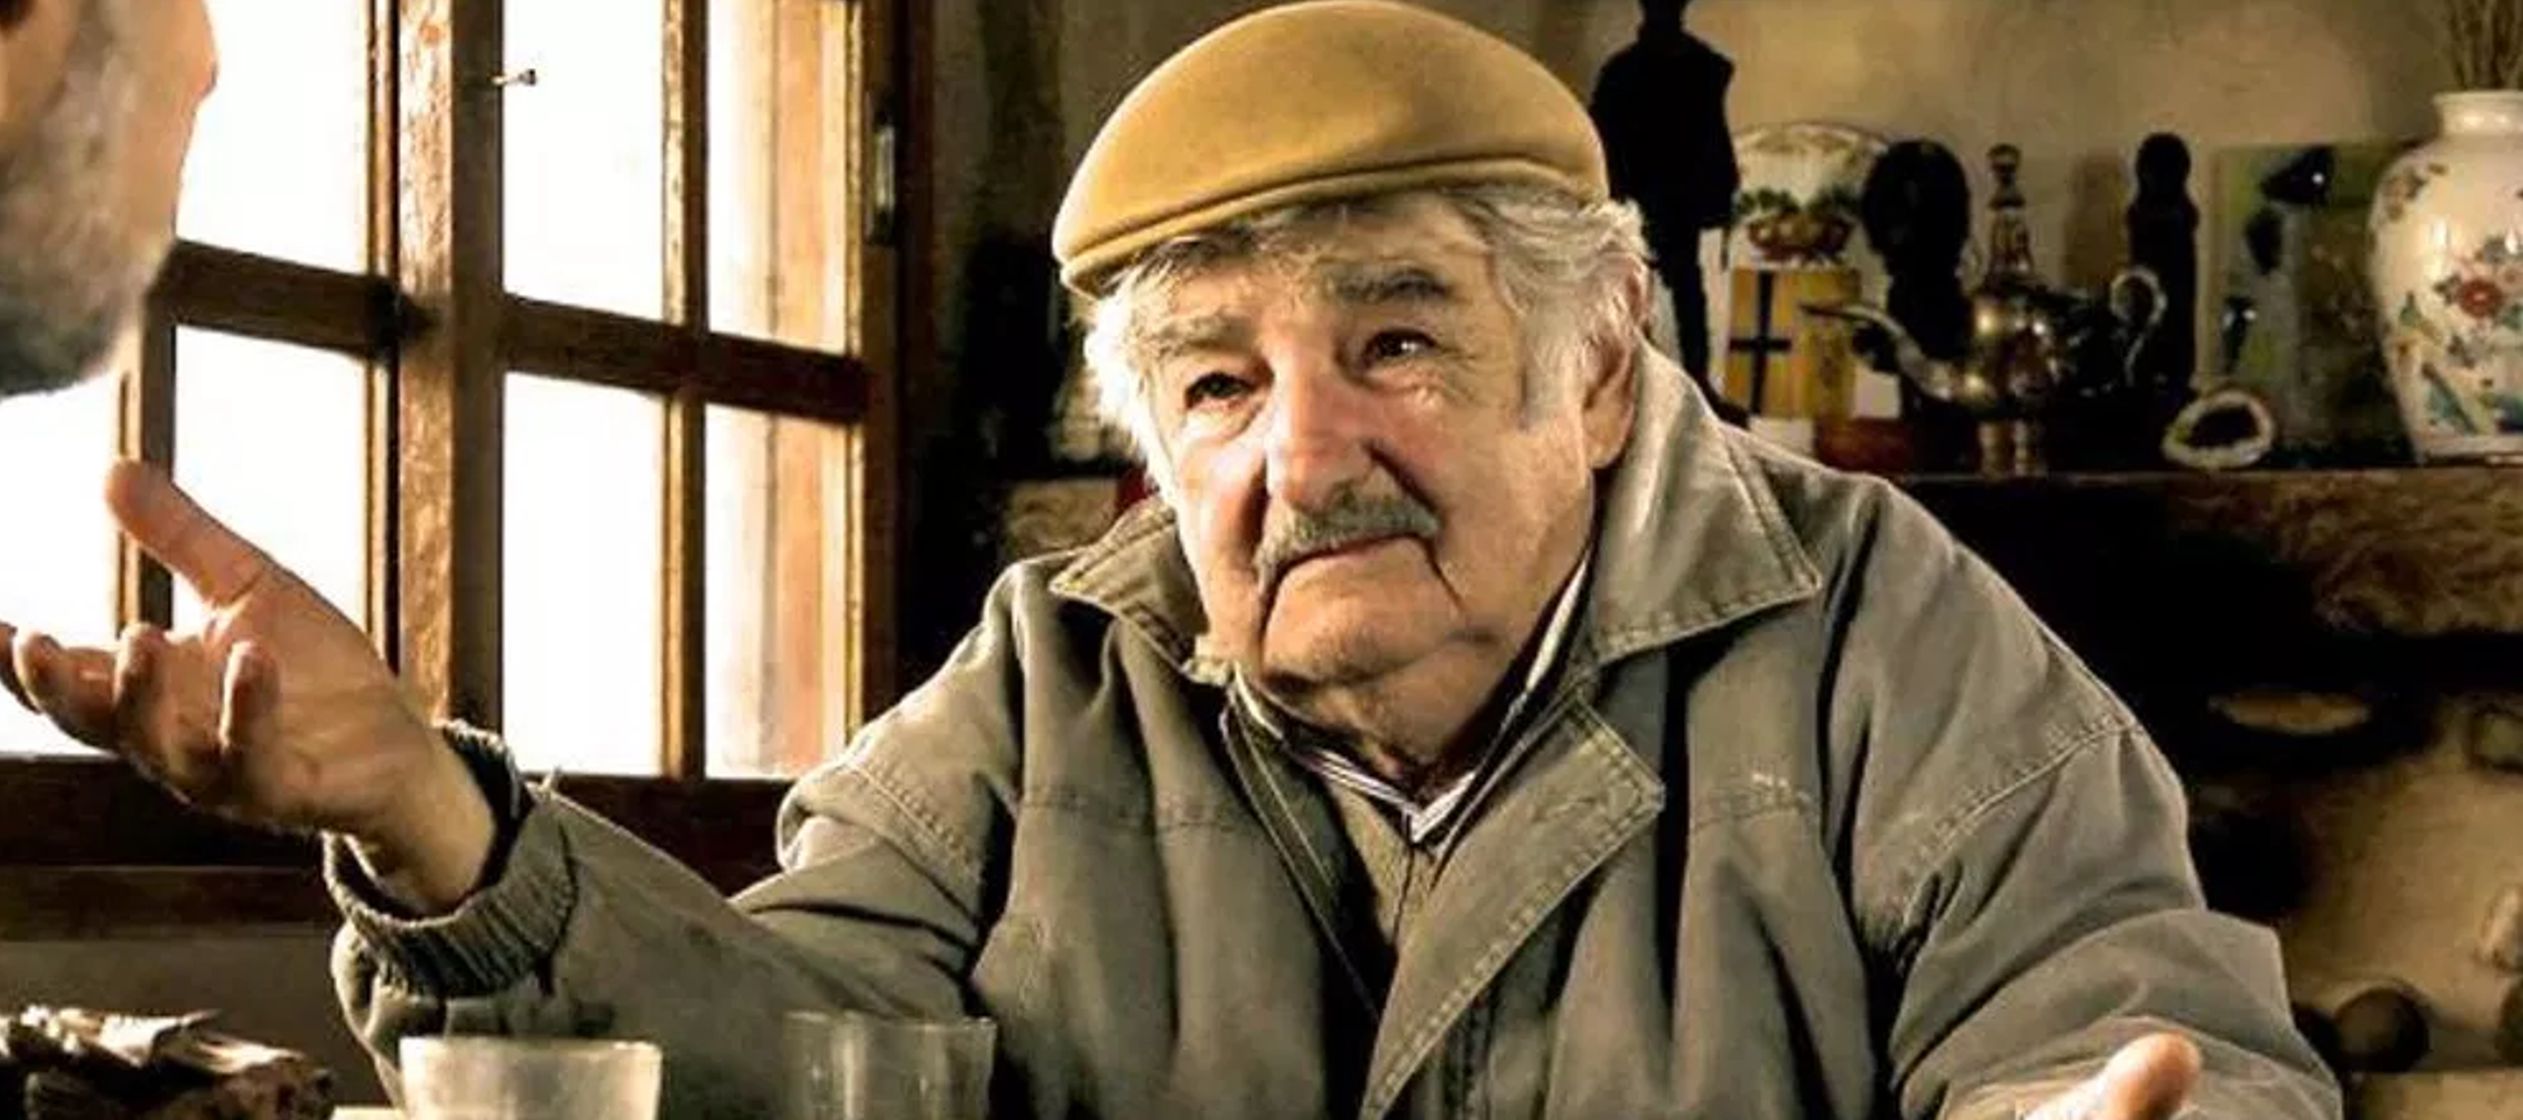 Esta es la primera salida internacional de Mujica tras renunciar, el pasado 14 de agosto, a su...